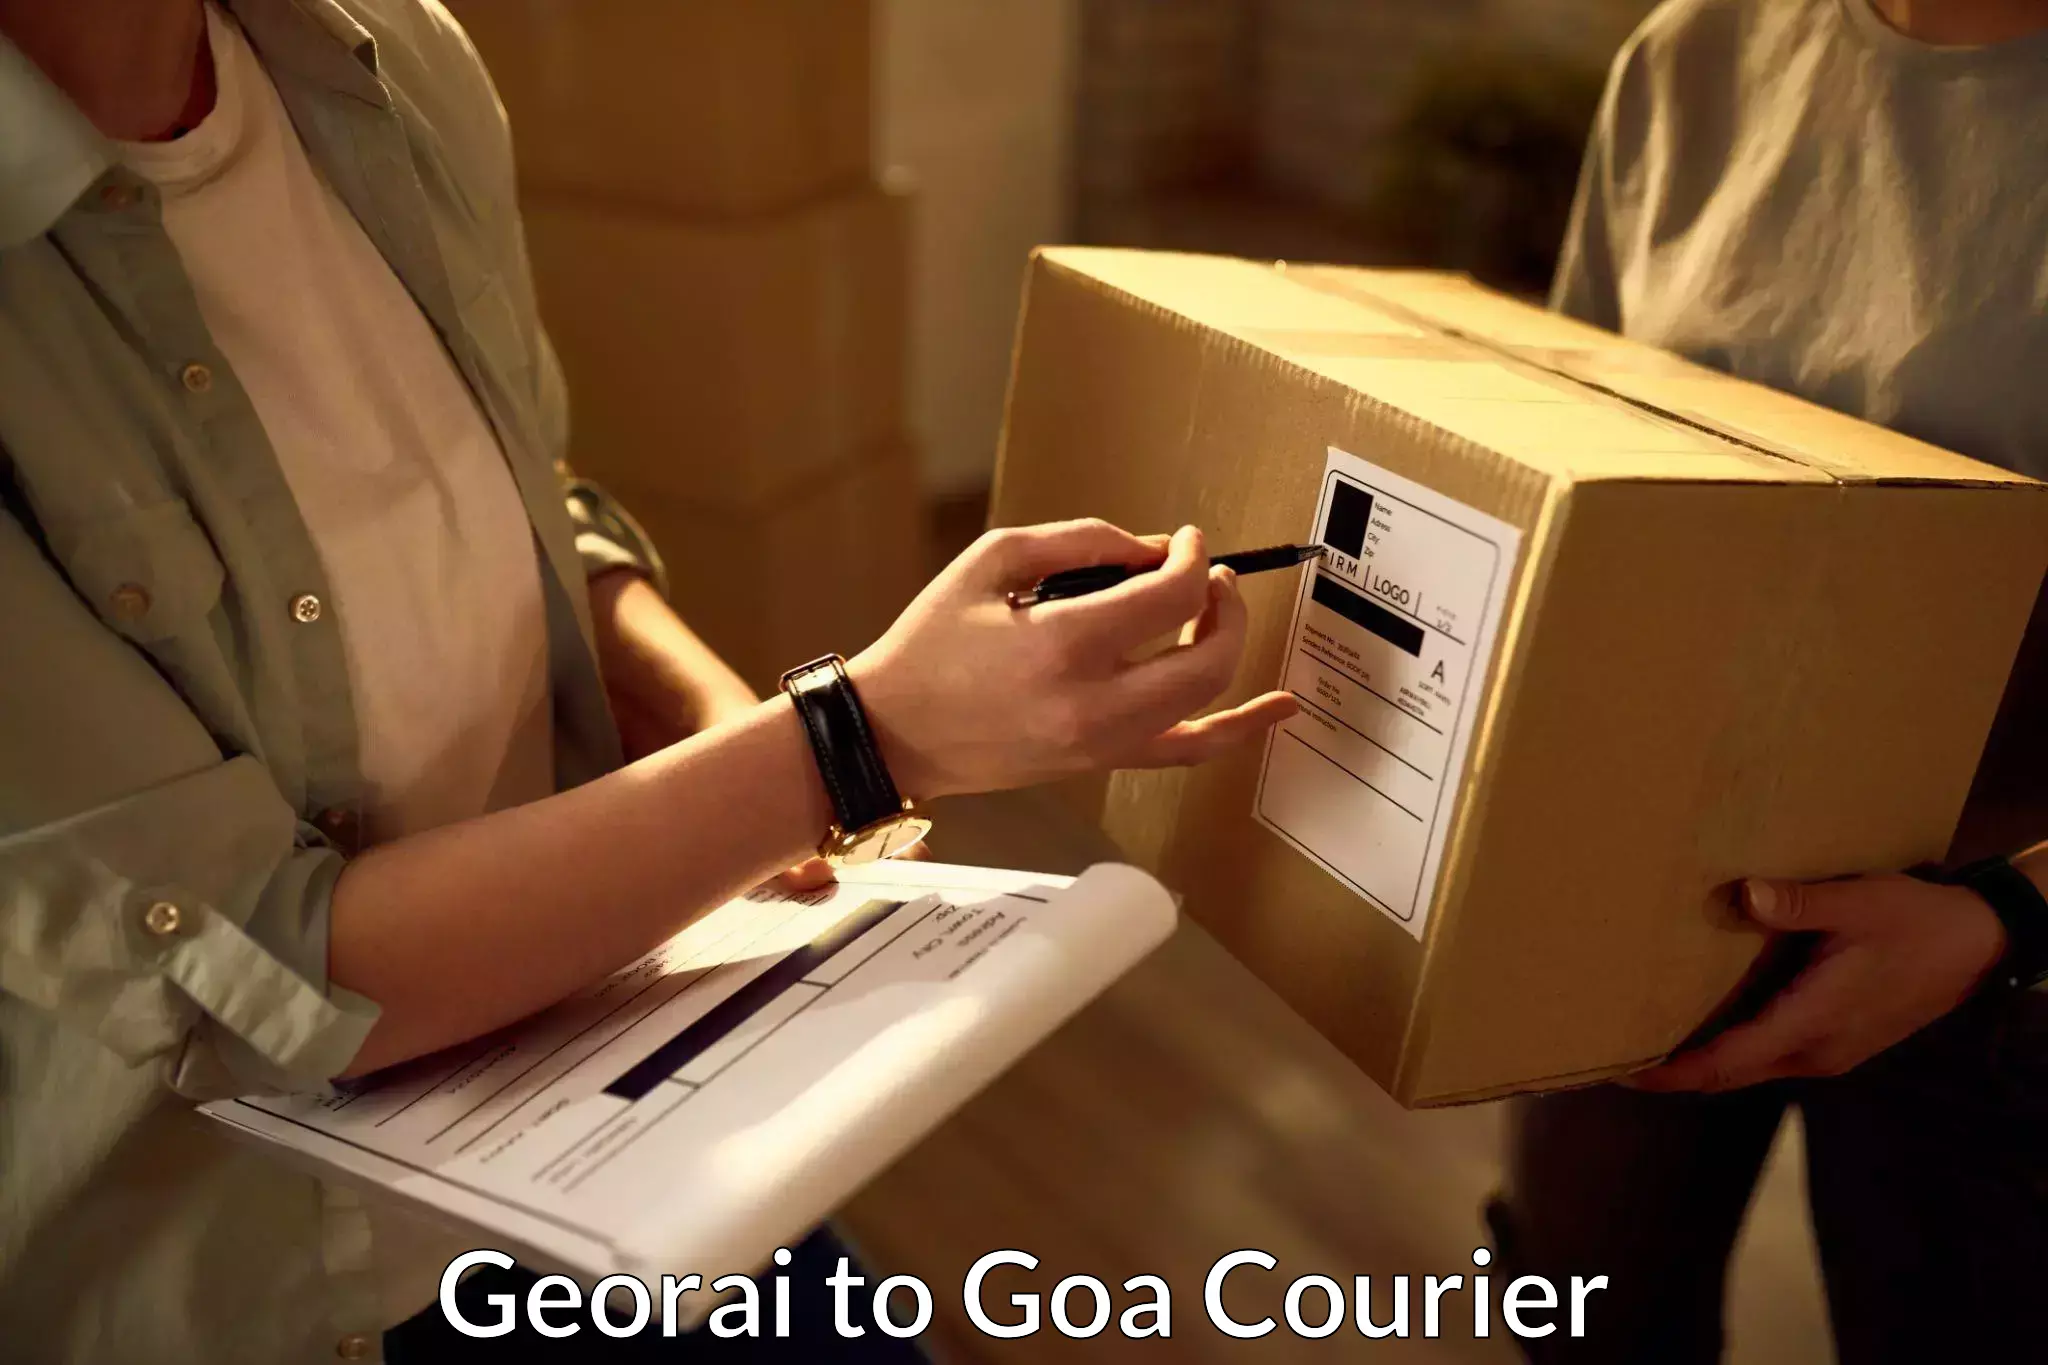 Customer-centric shipping Georai to Goa